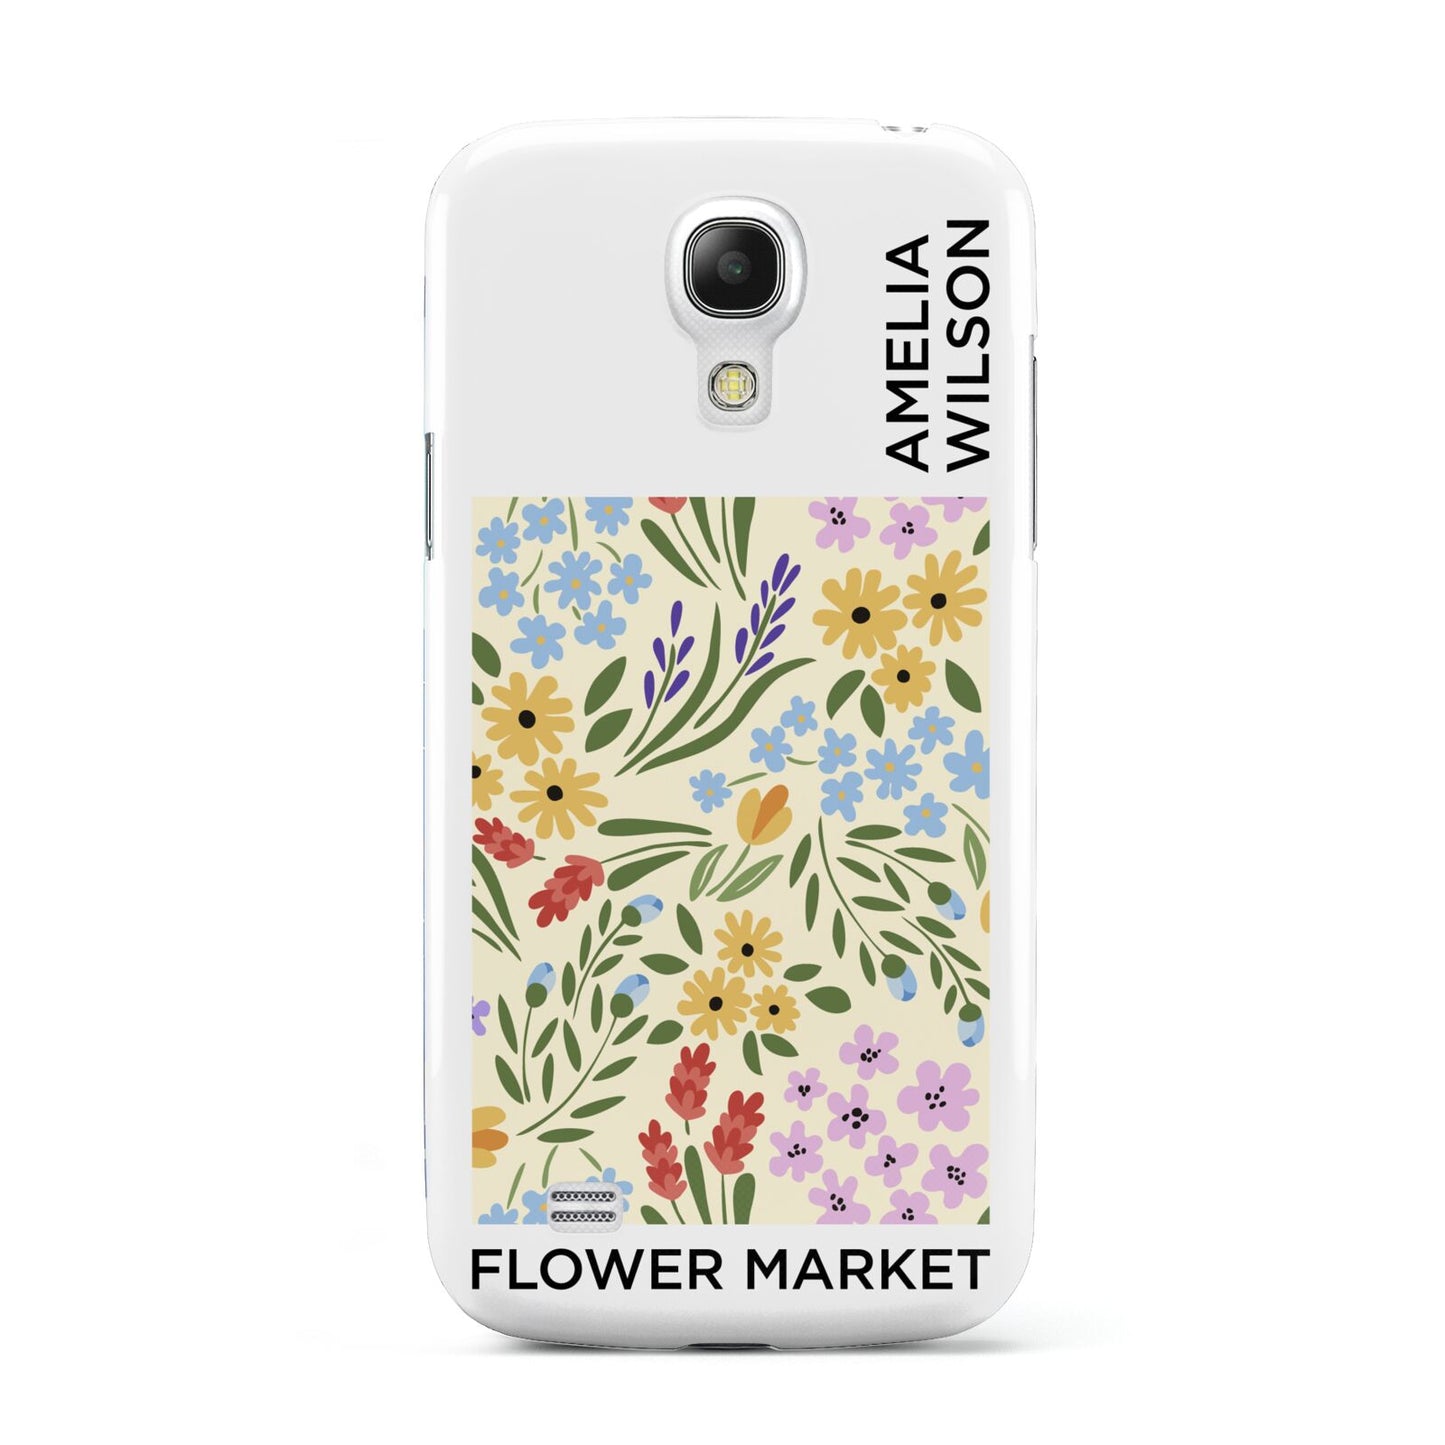 Paris Flower Market Samsung Galaxy S4 Mini Case